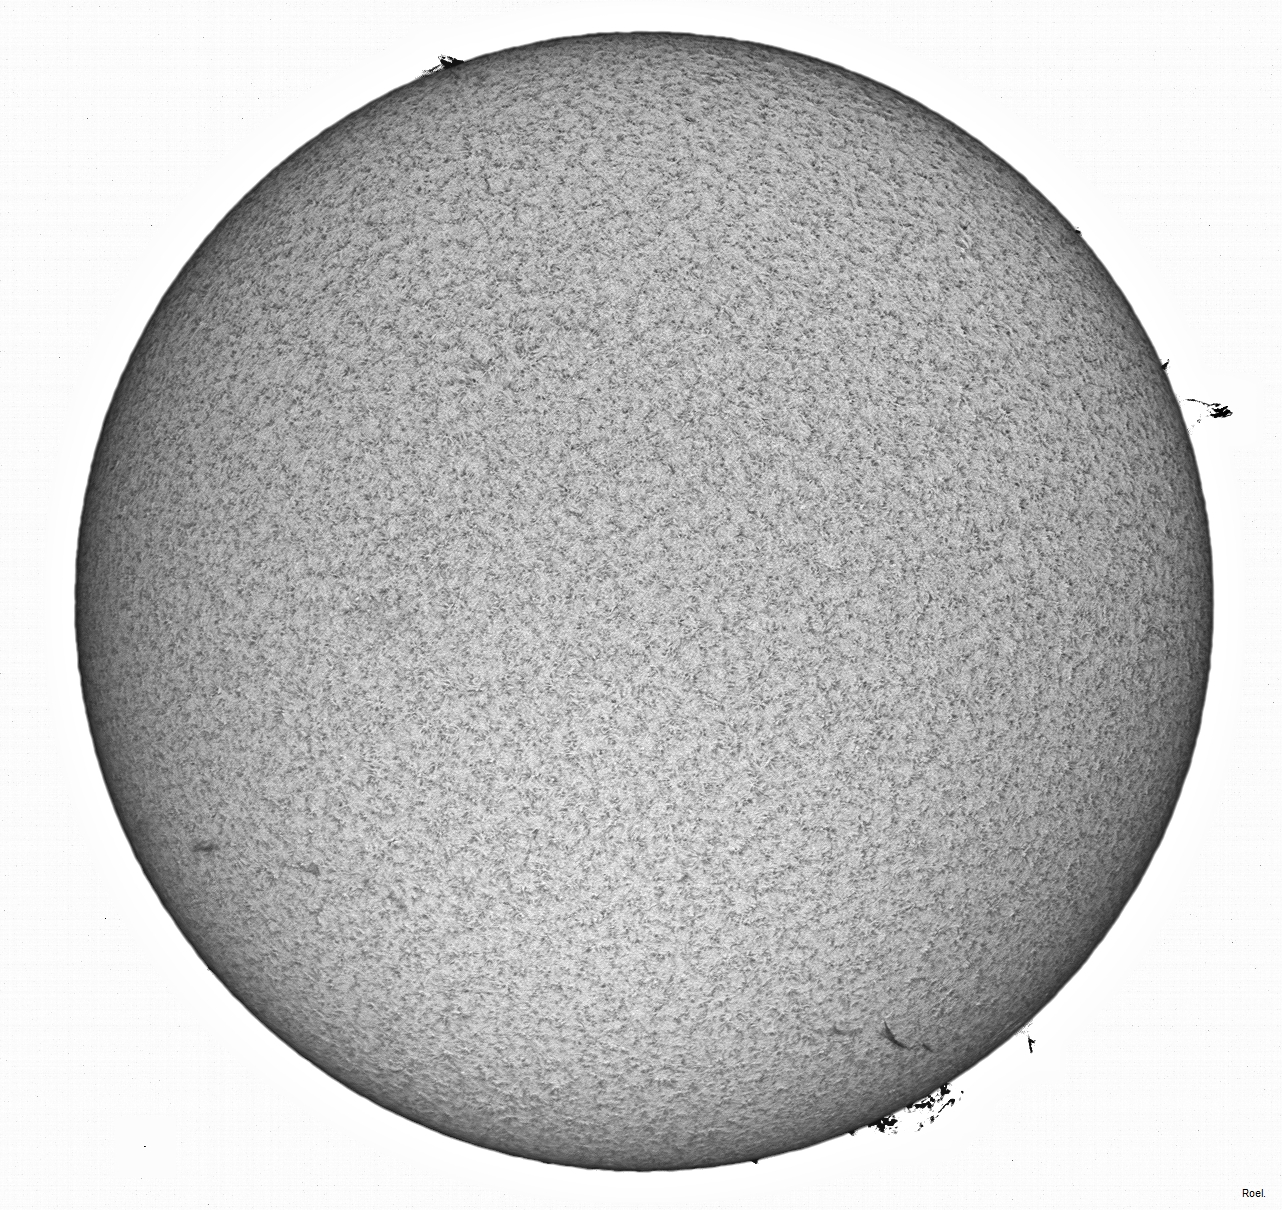 Sol del 9 de febrero 2020-Solarmax 90-DS-BF30-1pos-neg.jpg